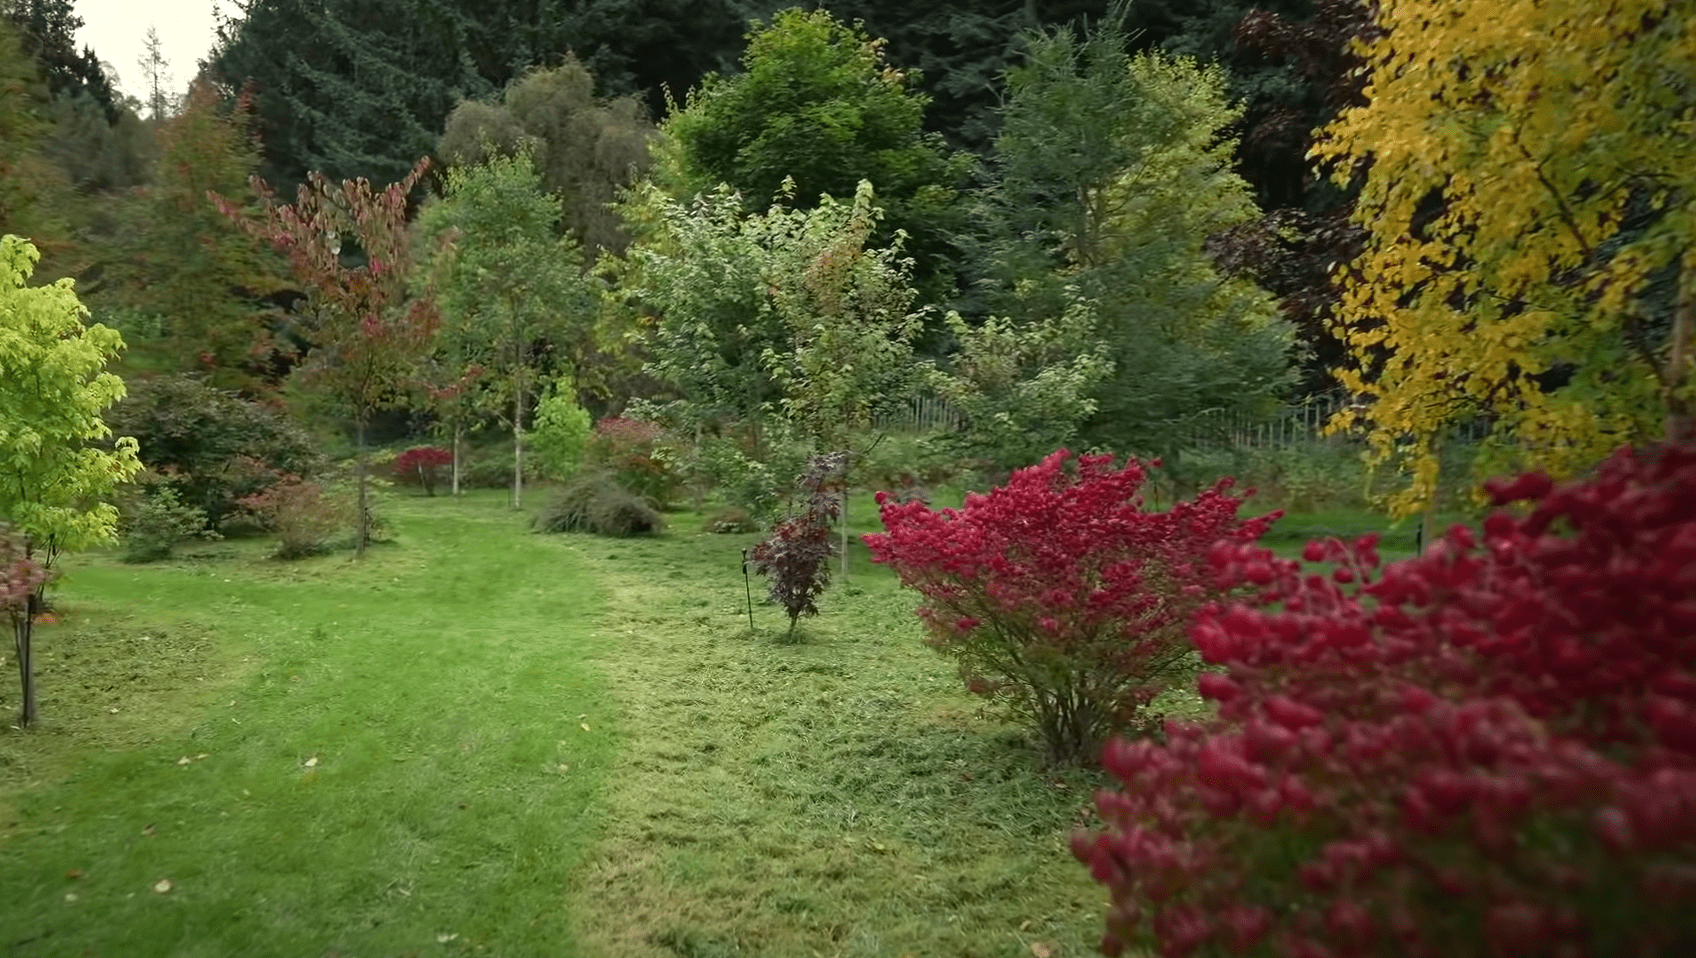 Una imagen que muestra la belleza del jardín del rey Charles | Foto: YouTube/BBC News